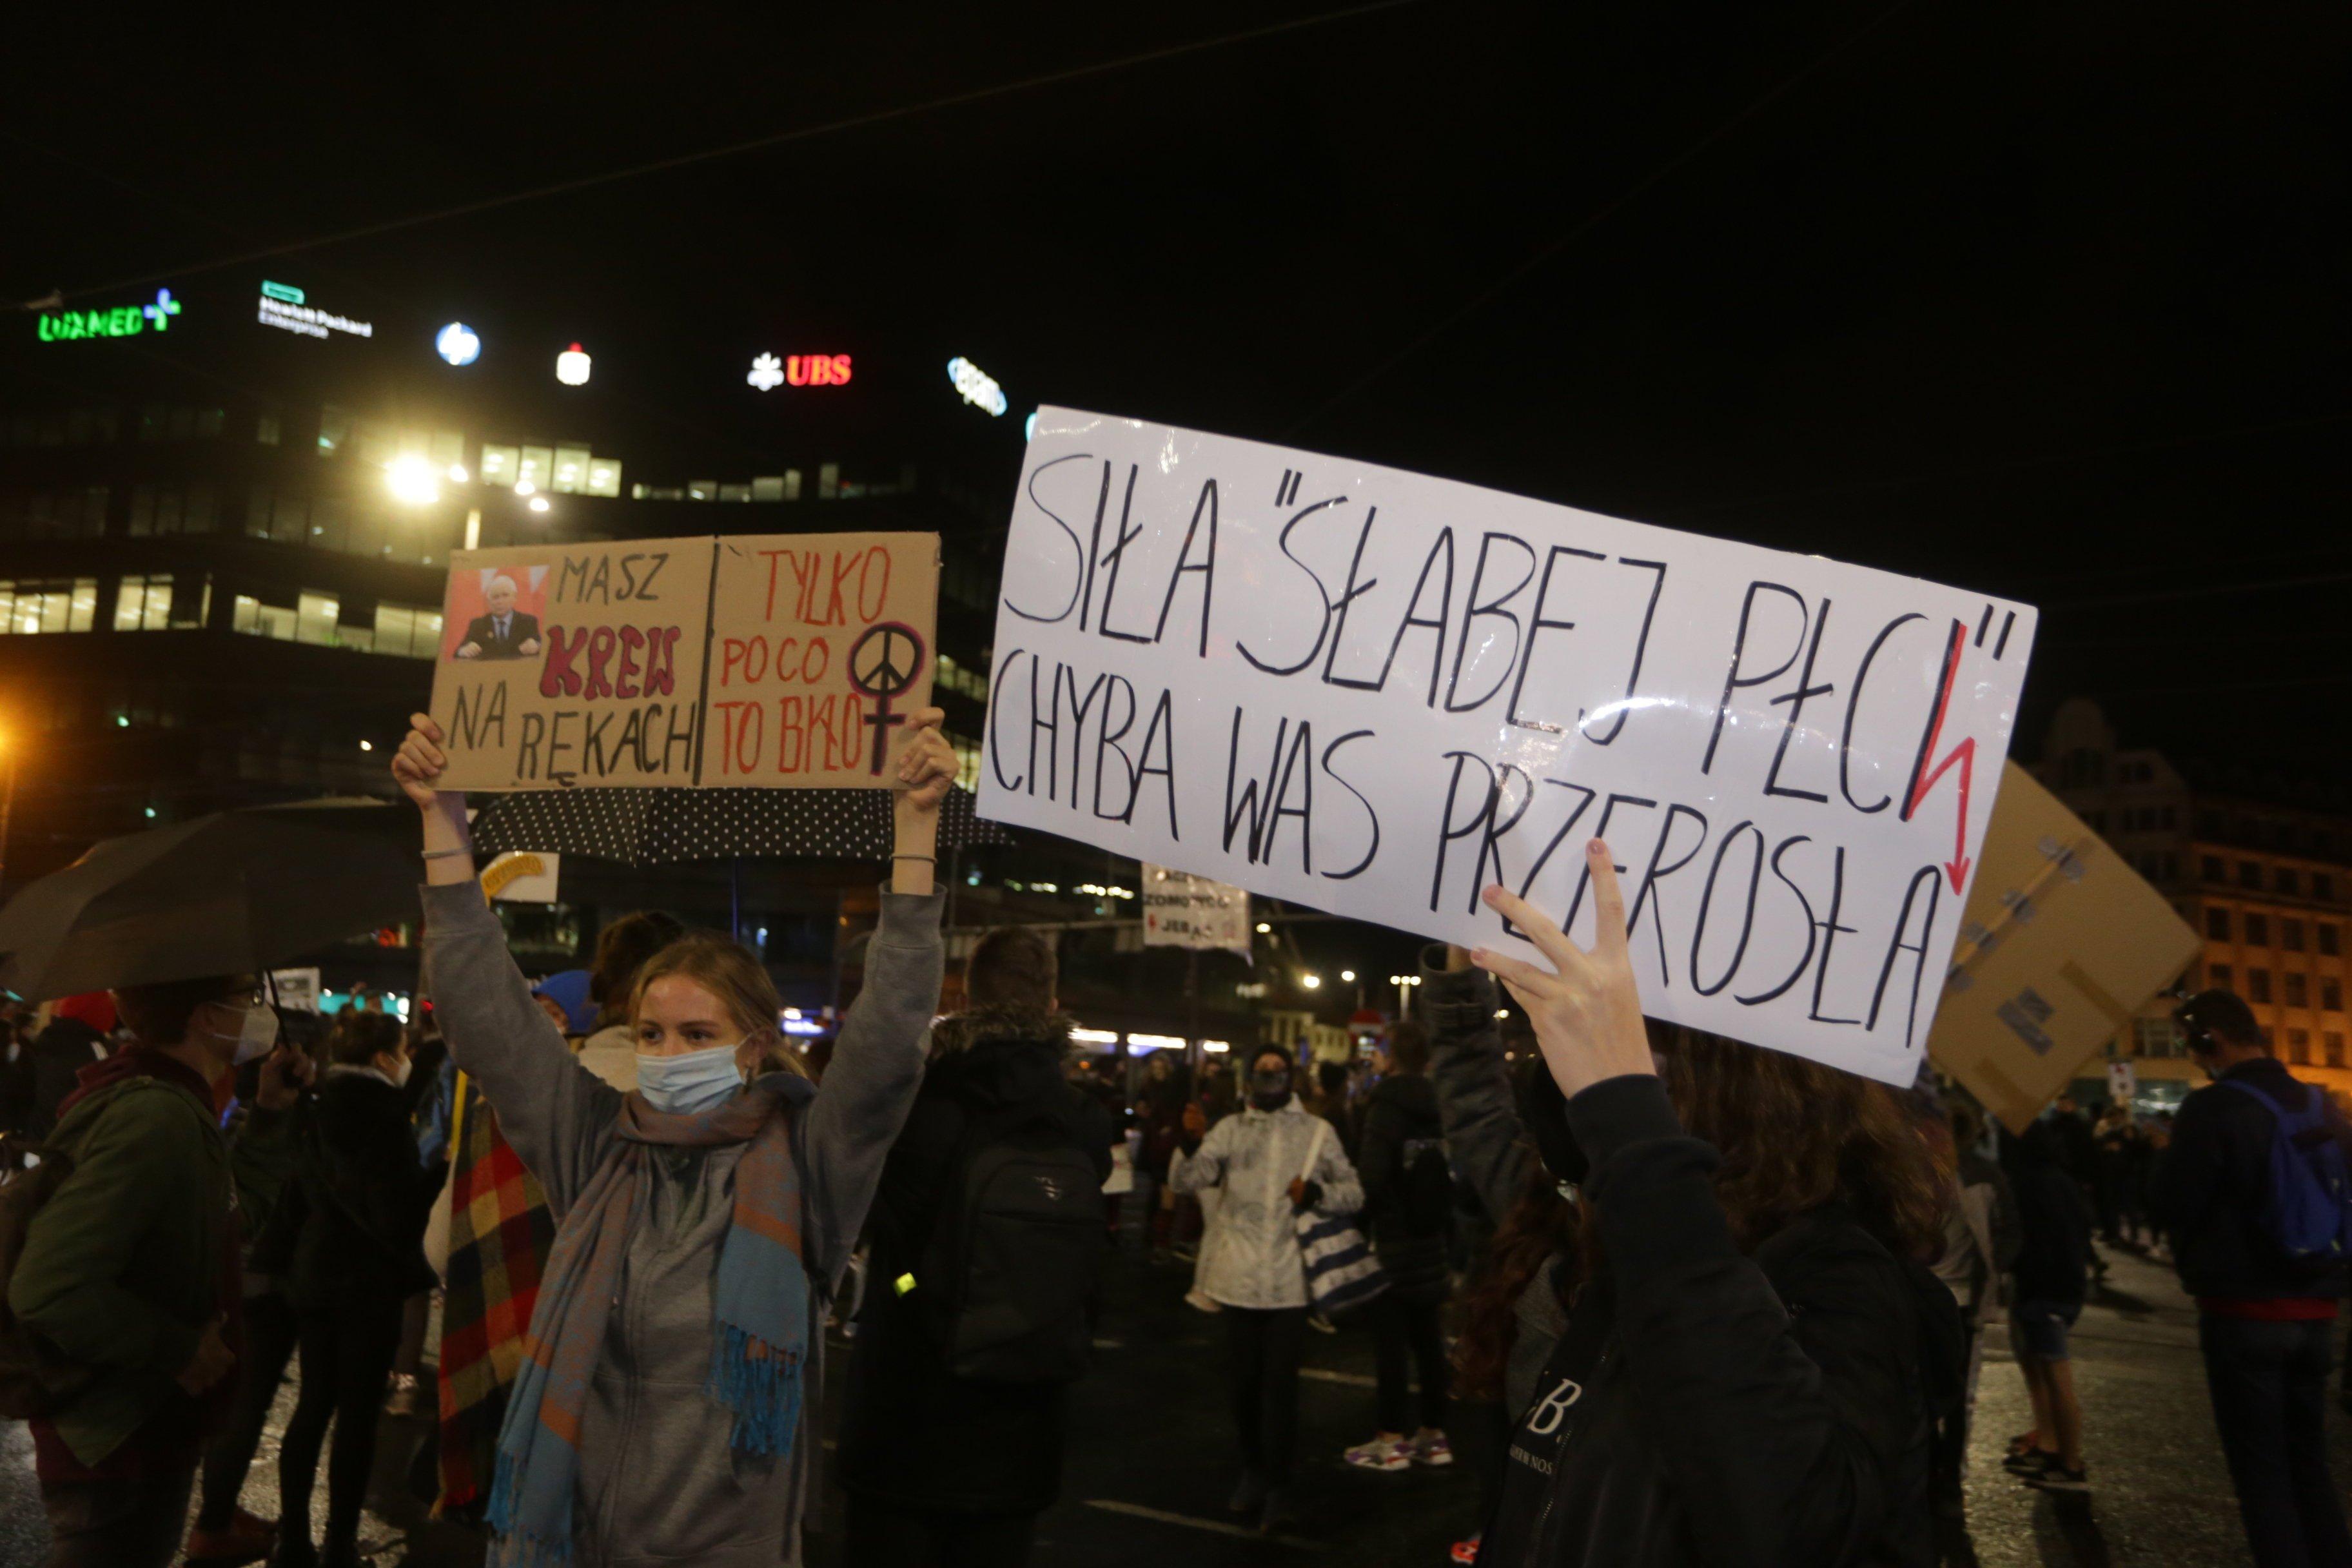 Demonstrantki trzymają transparent "Siła »słabej płci« chyba was przerosła